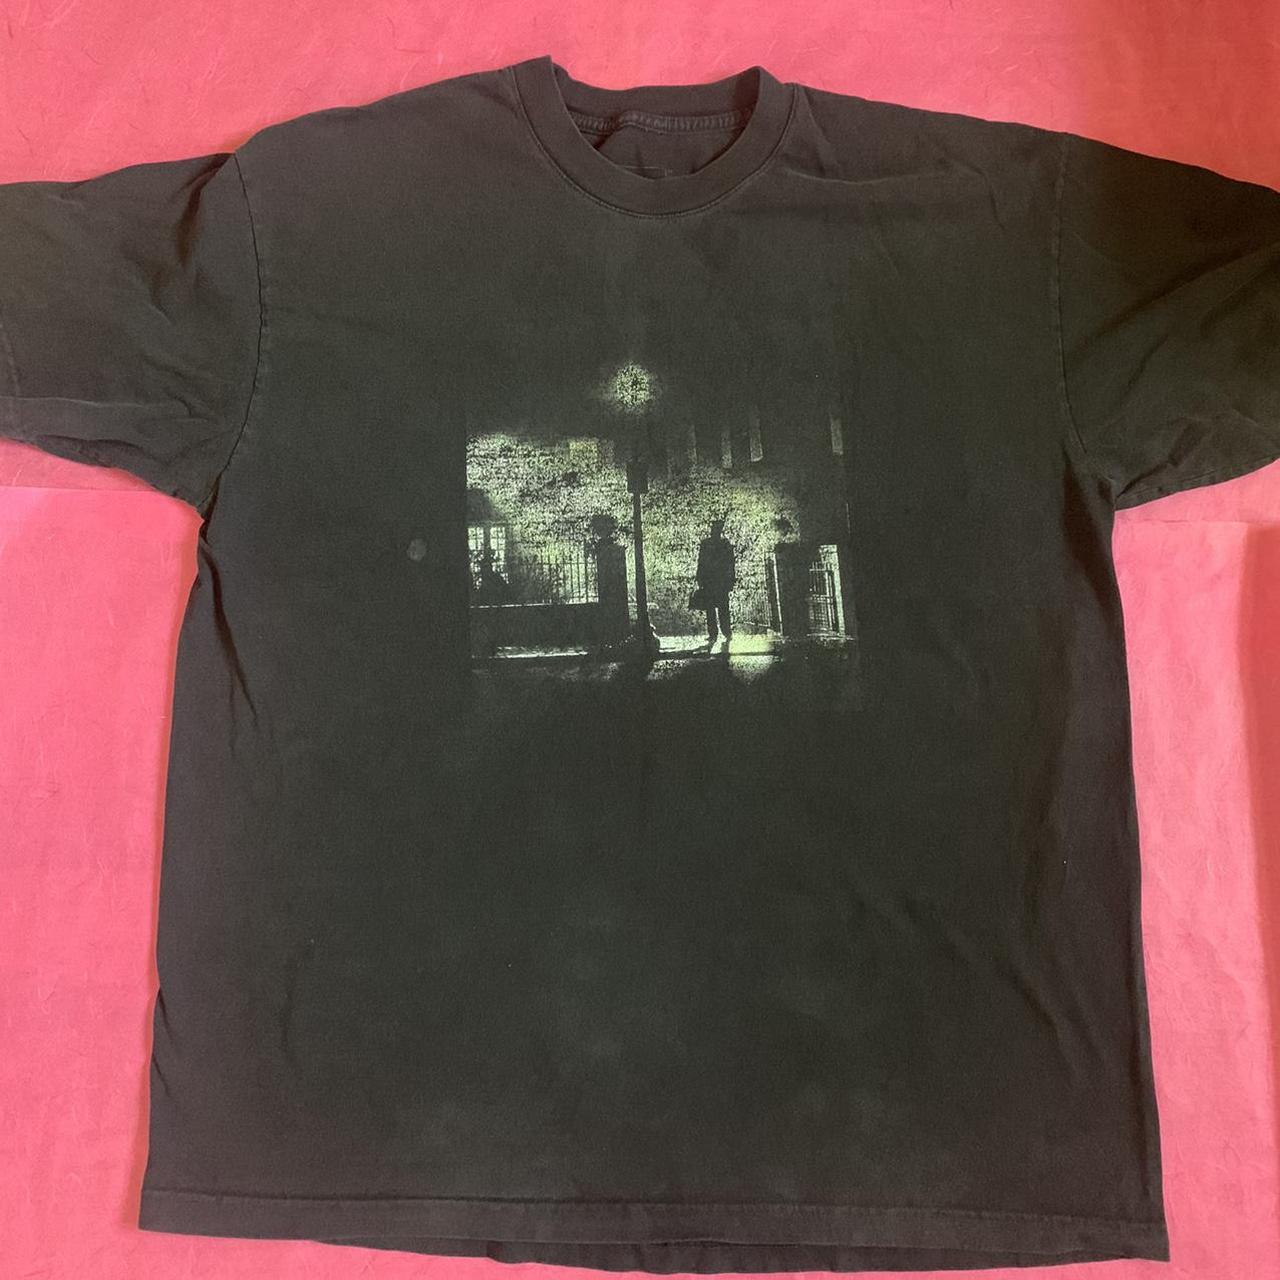 Product Image 1 - The Exorcist Shirt by Dumbgood.